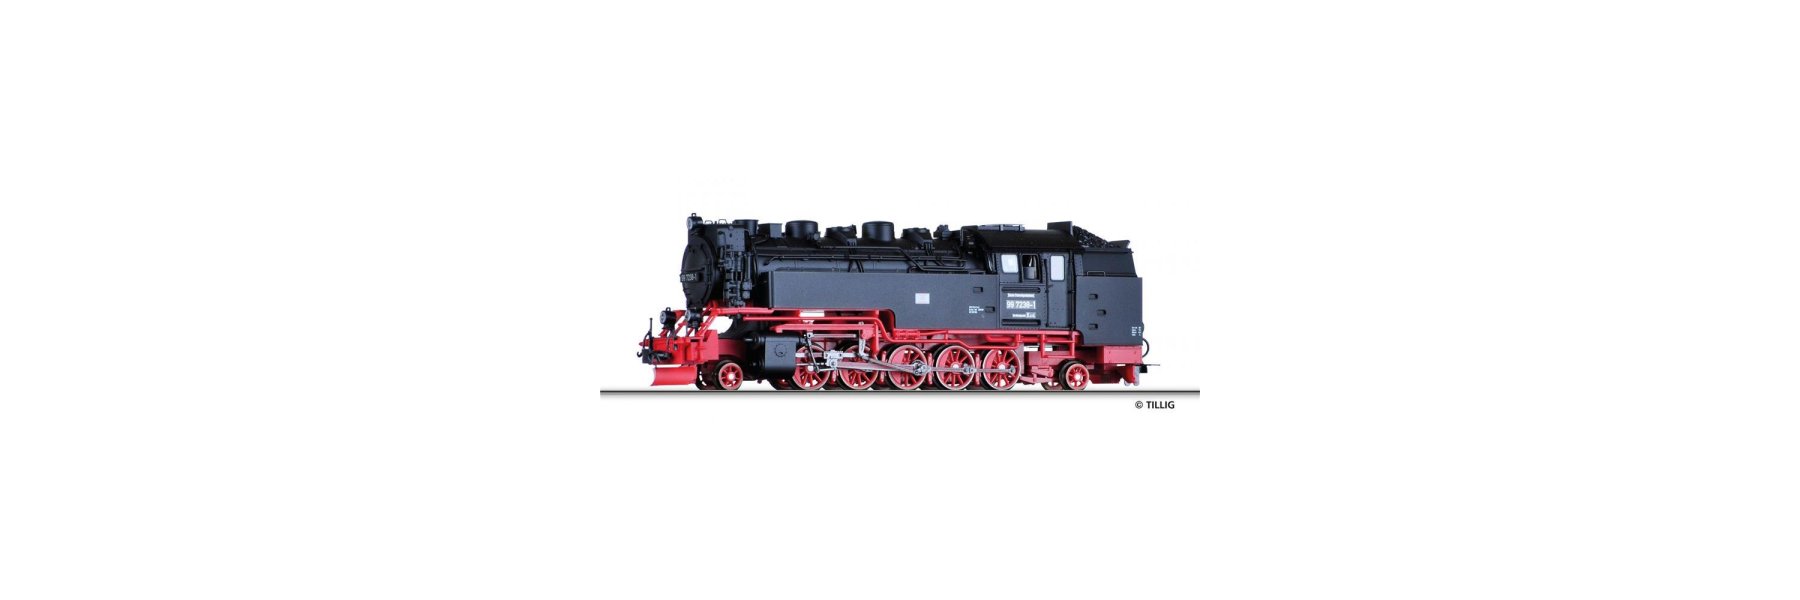 Lokomotiven H0m